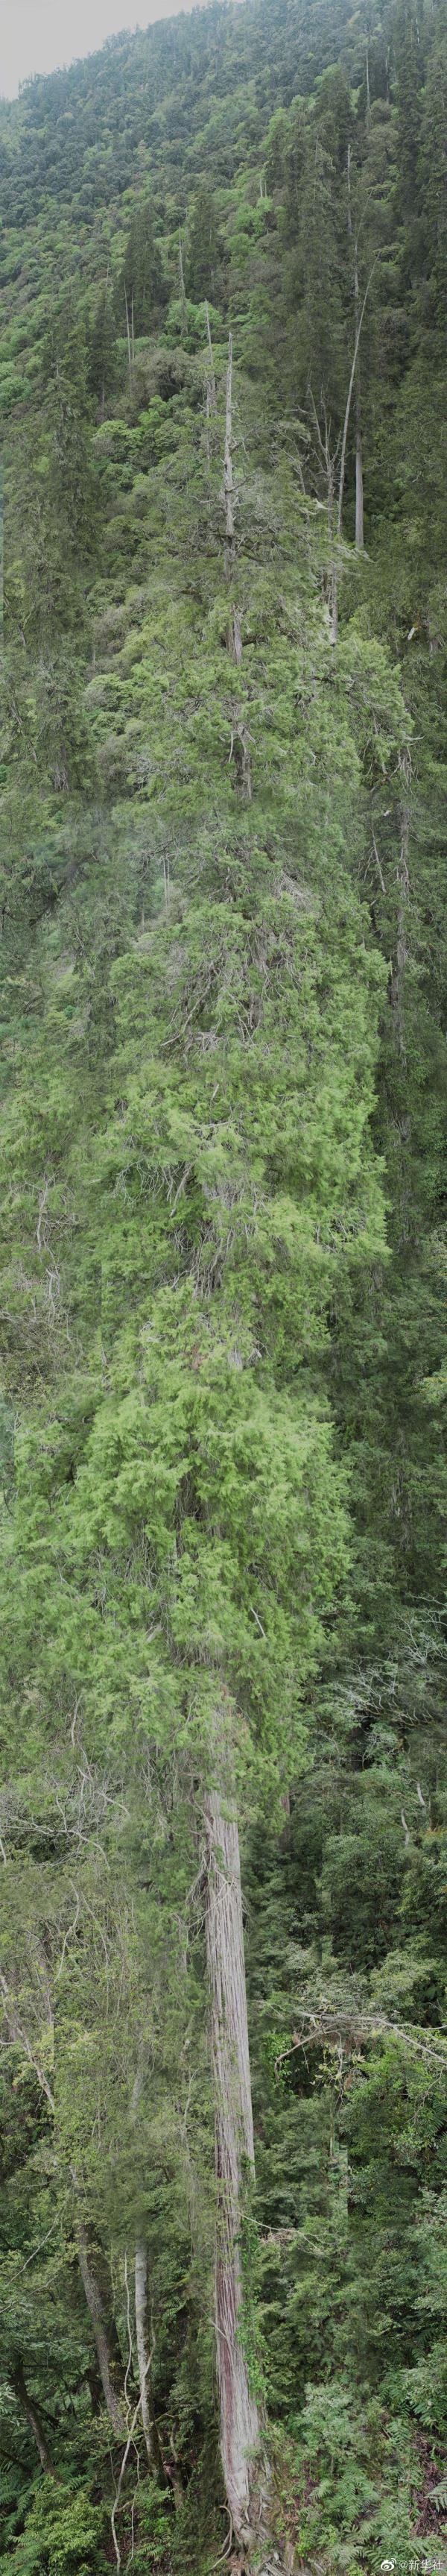 青藏高原树木种类图片